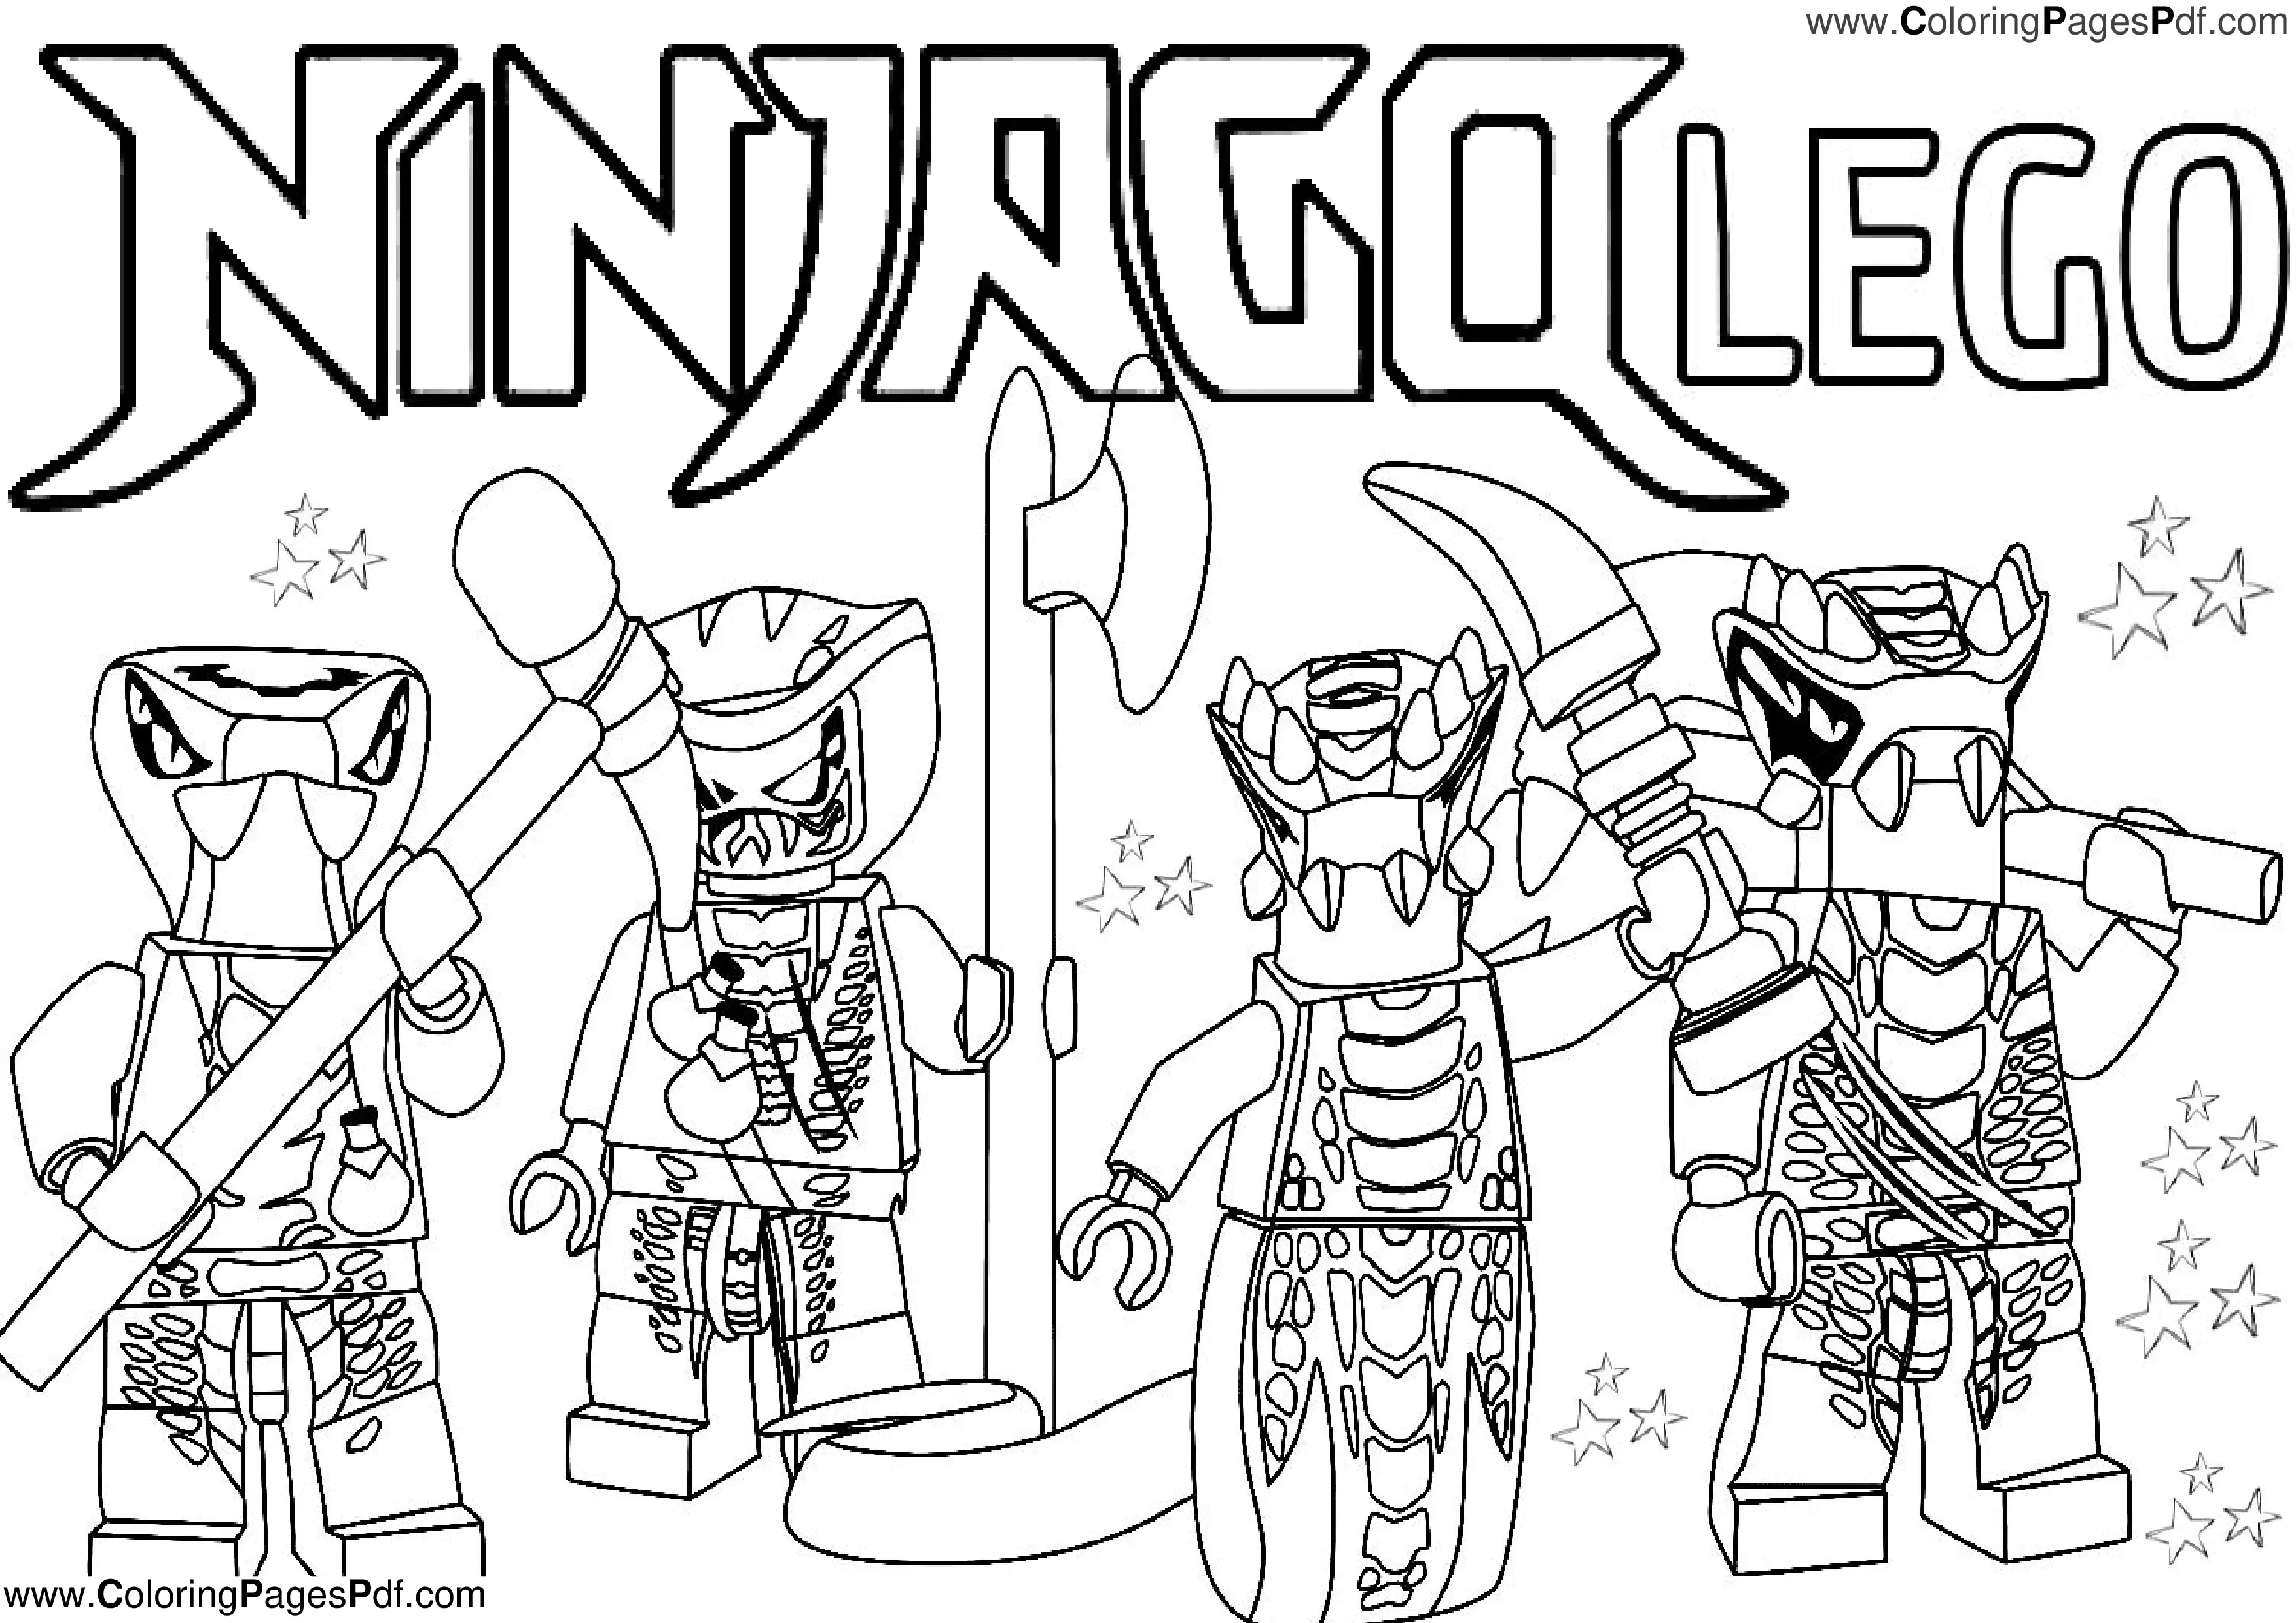 Ninjago coloring pages S13